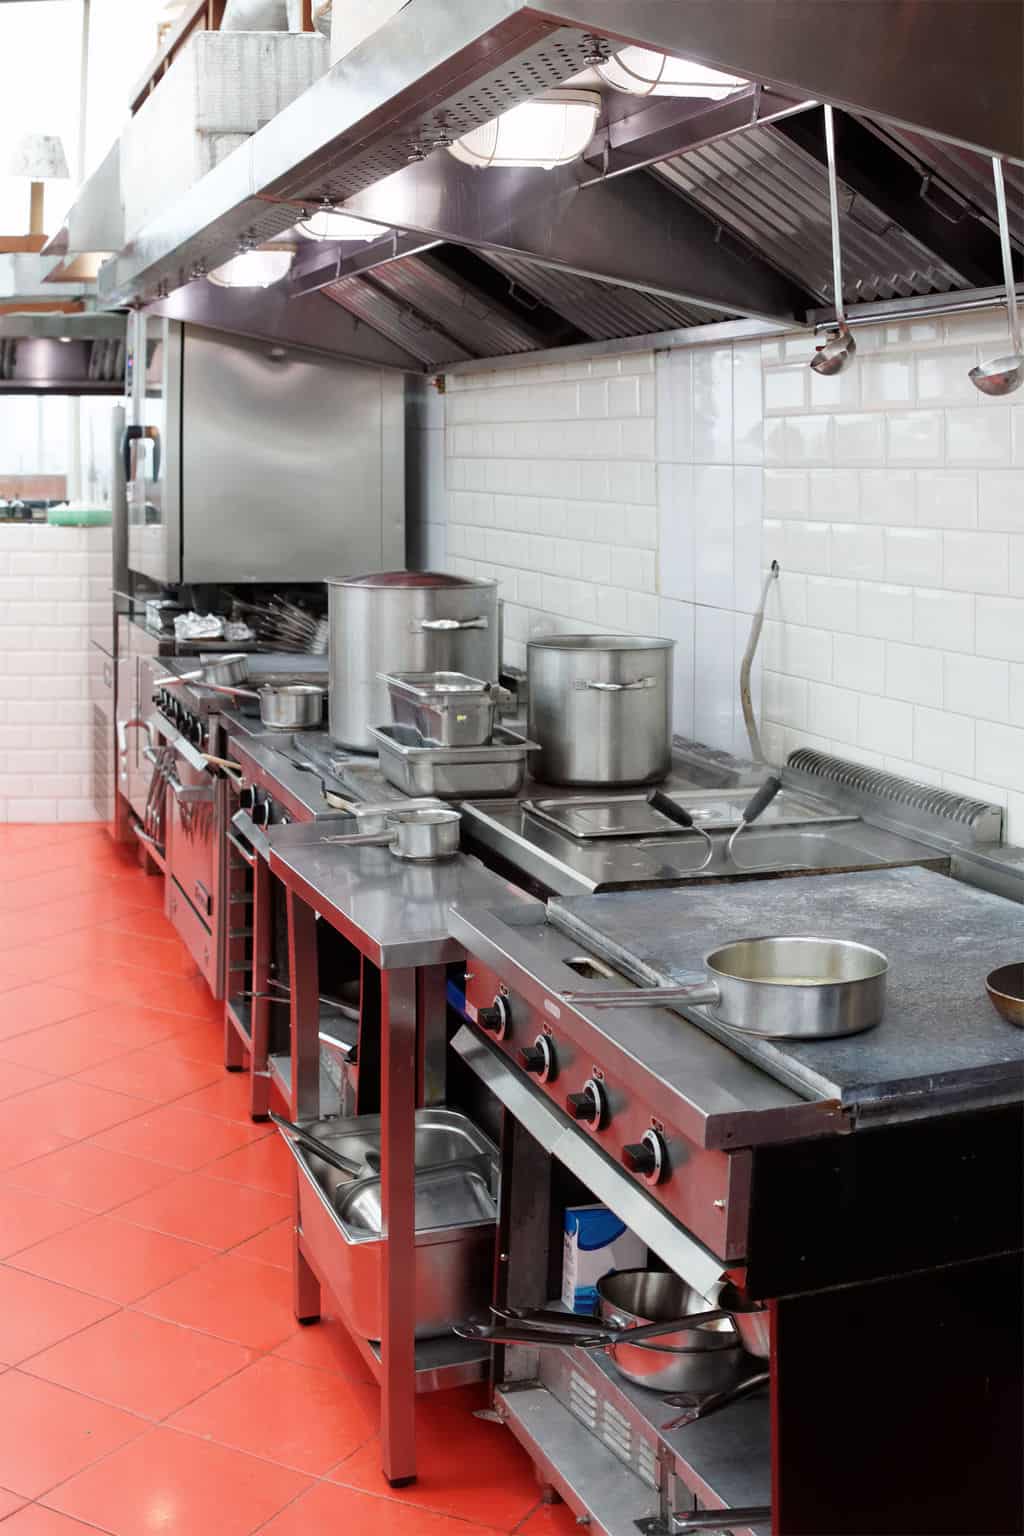 The Best Restaurant Kitchen Flooring Ideas - A Design For Your Floor Plan